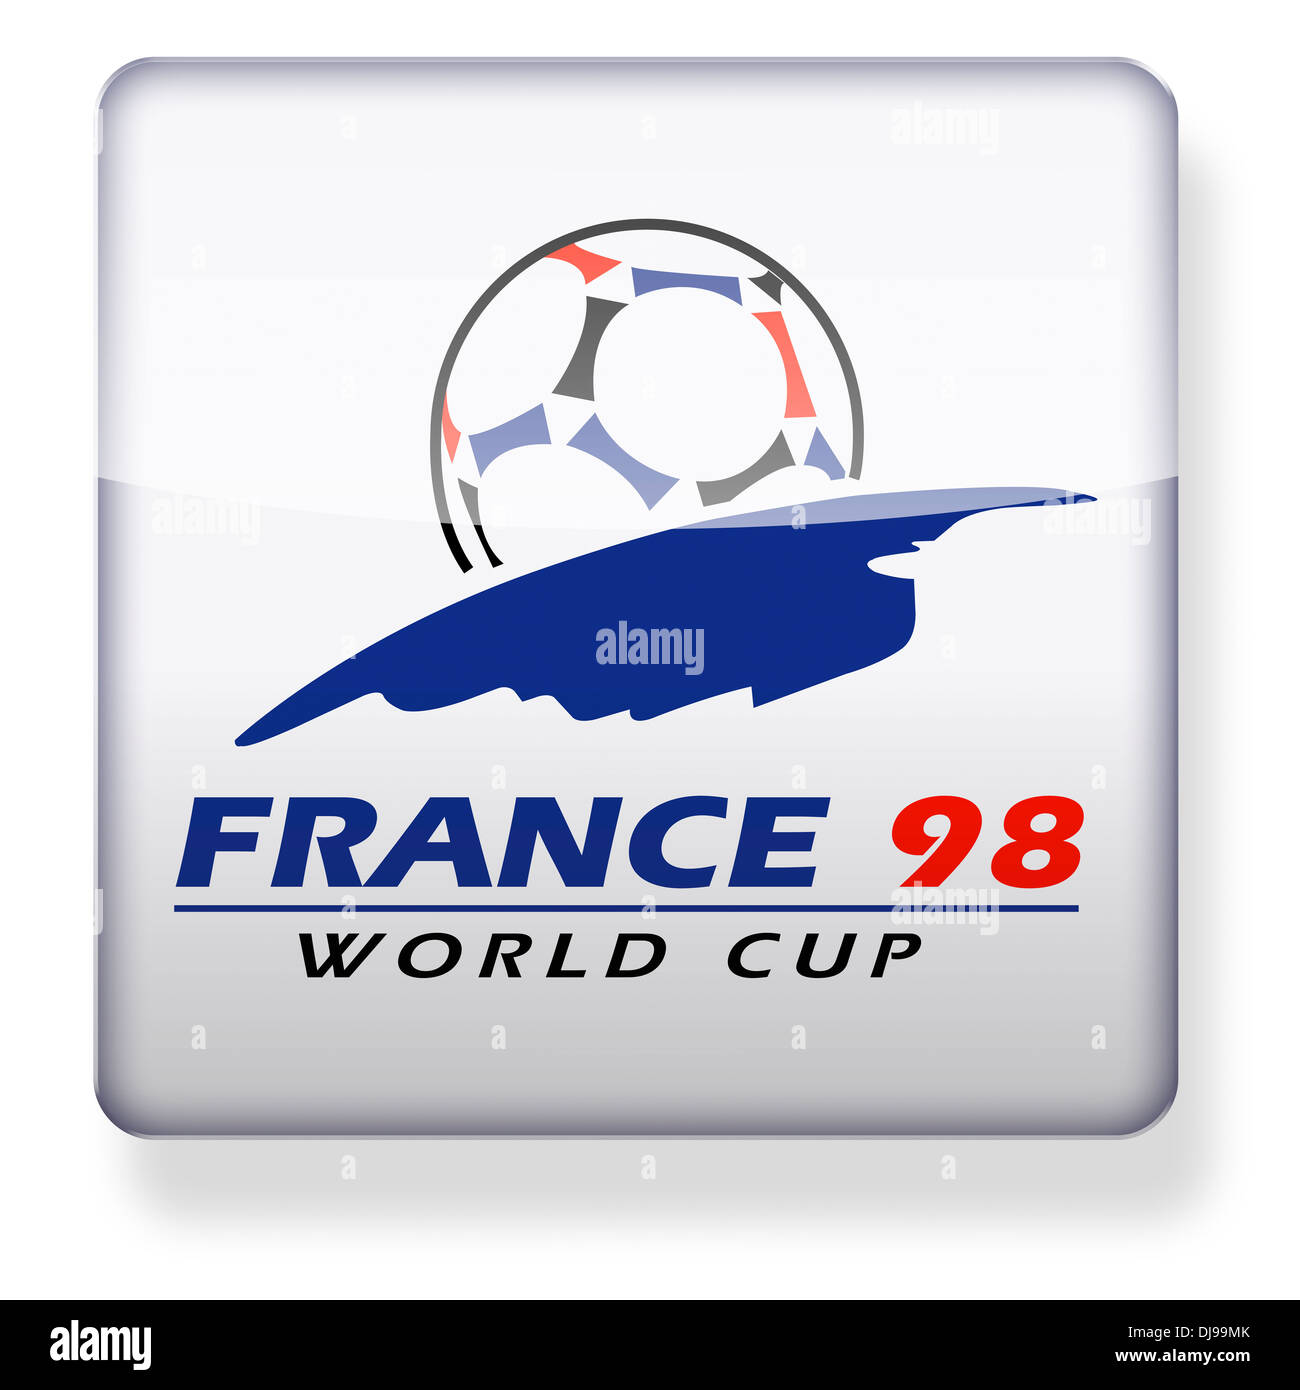 Fifa world cup 1998 france Banque de photographies et d'images à haute  résolution - Alamy